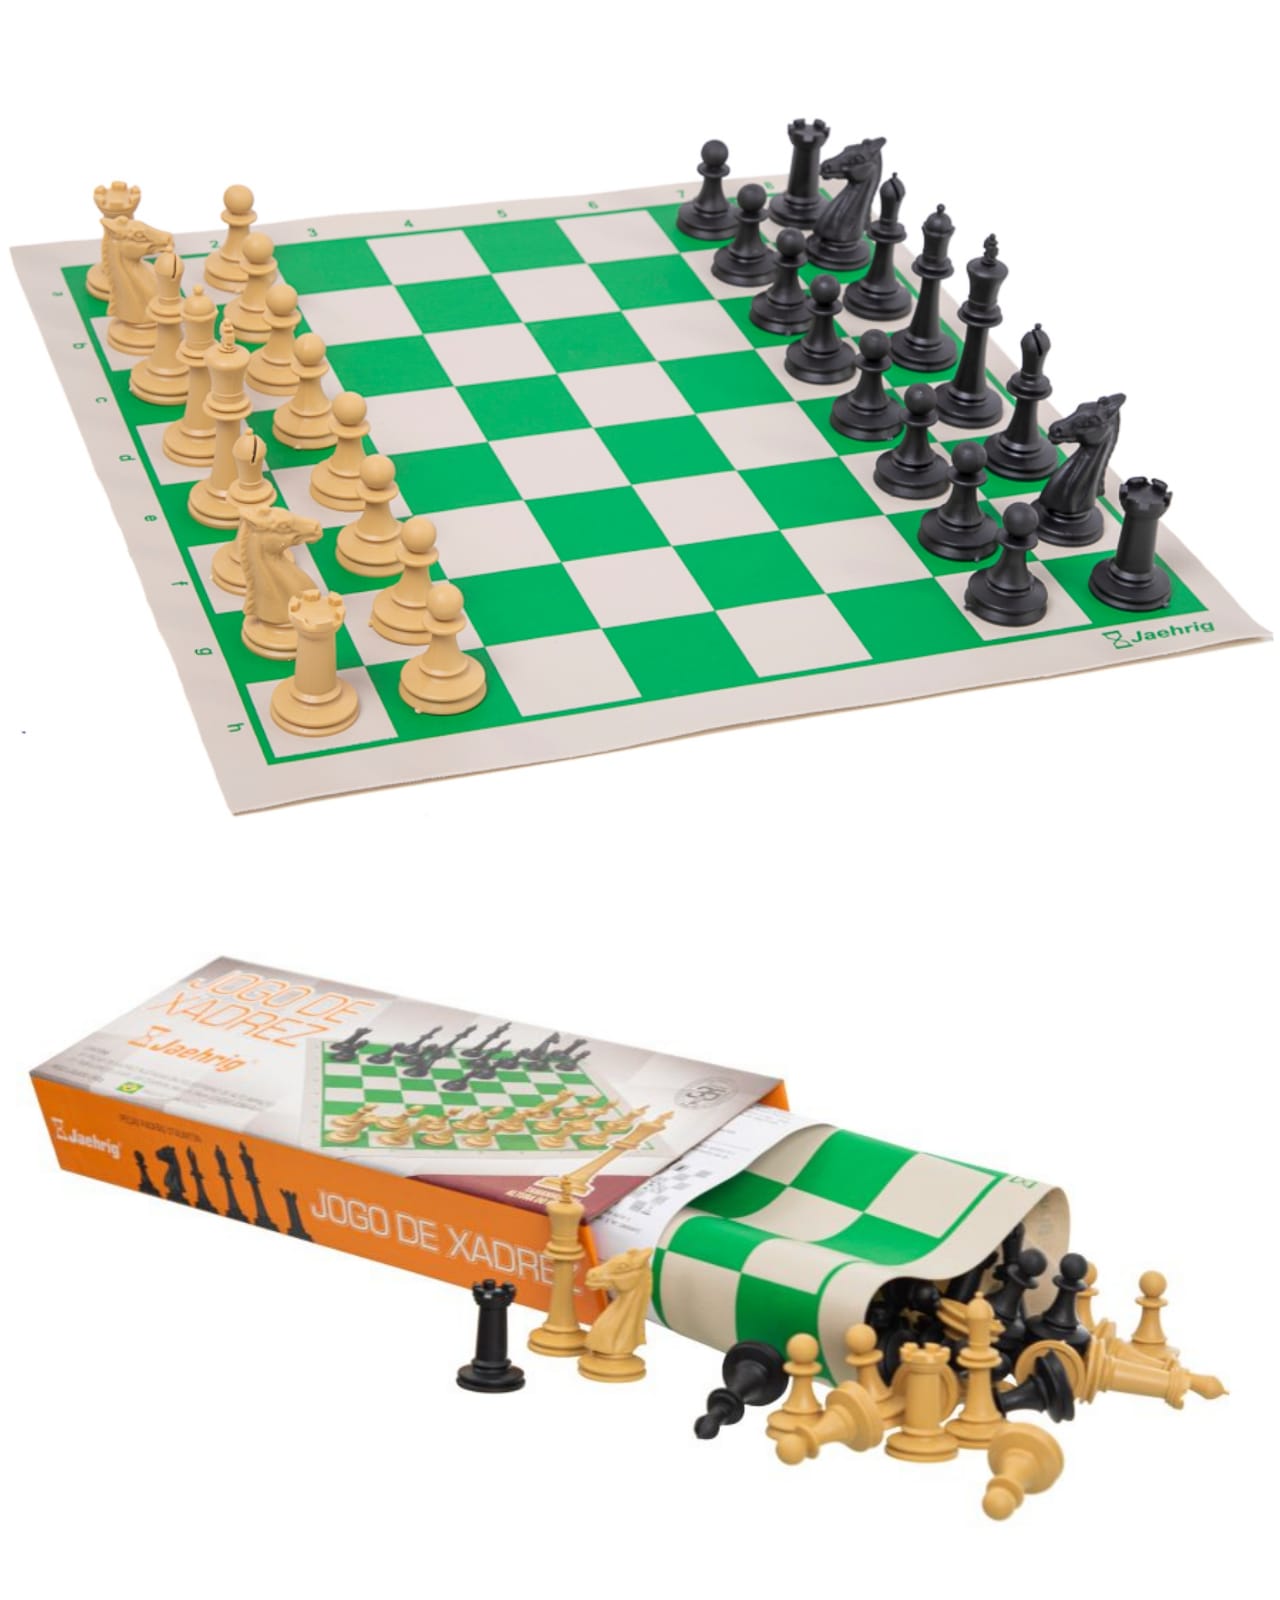 9. Regras oficiais do jogo de xadrez